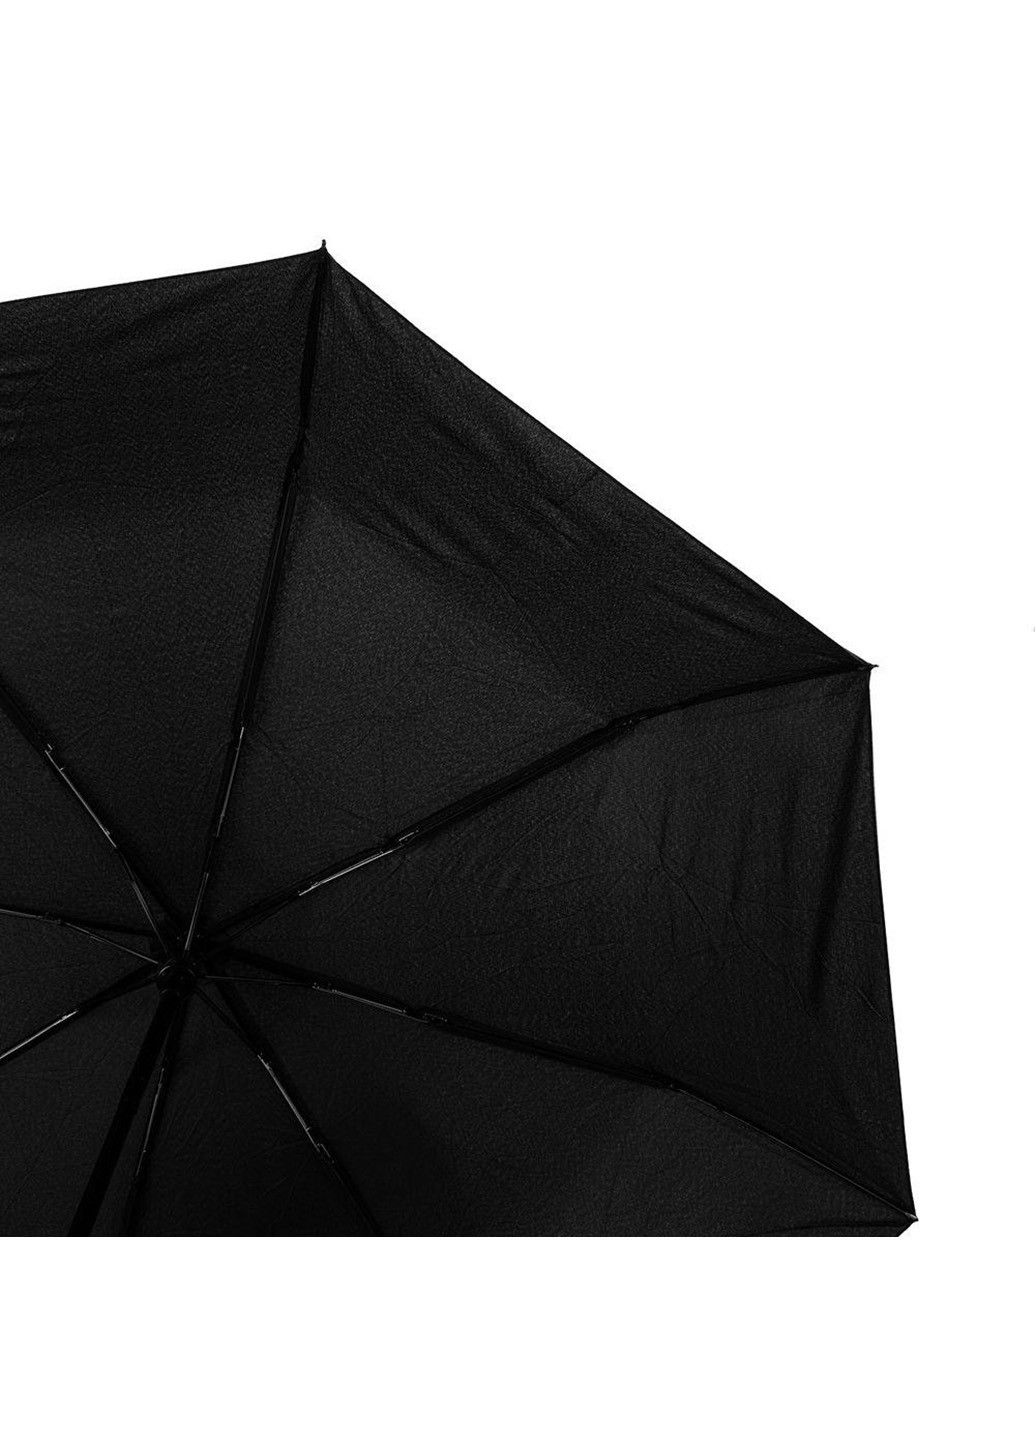 Мужской складной зонт полный автомат 103 см Art rain (216146726)